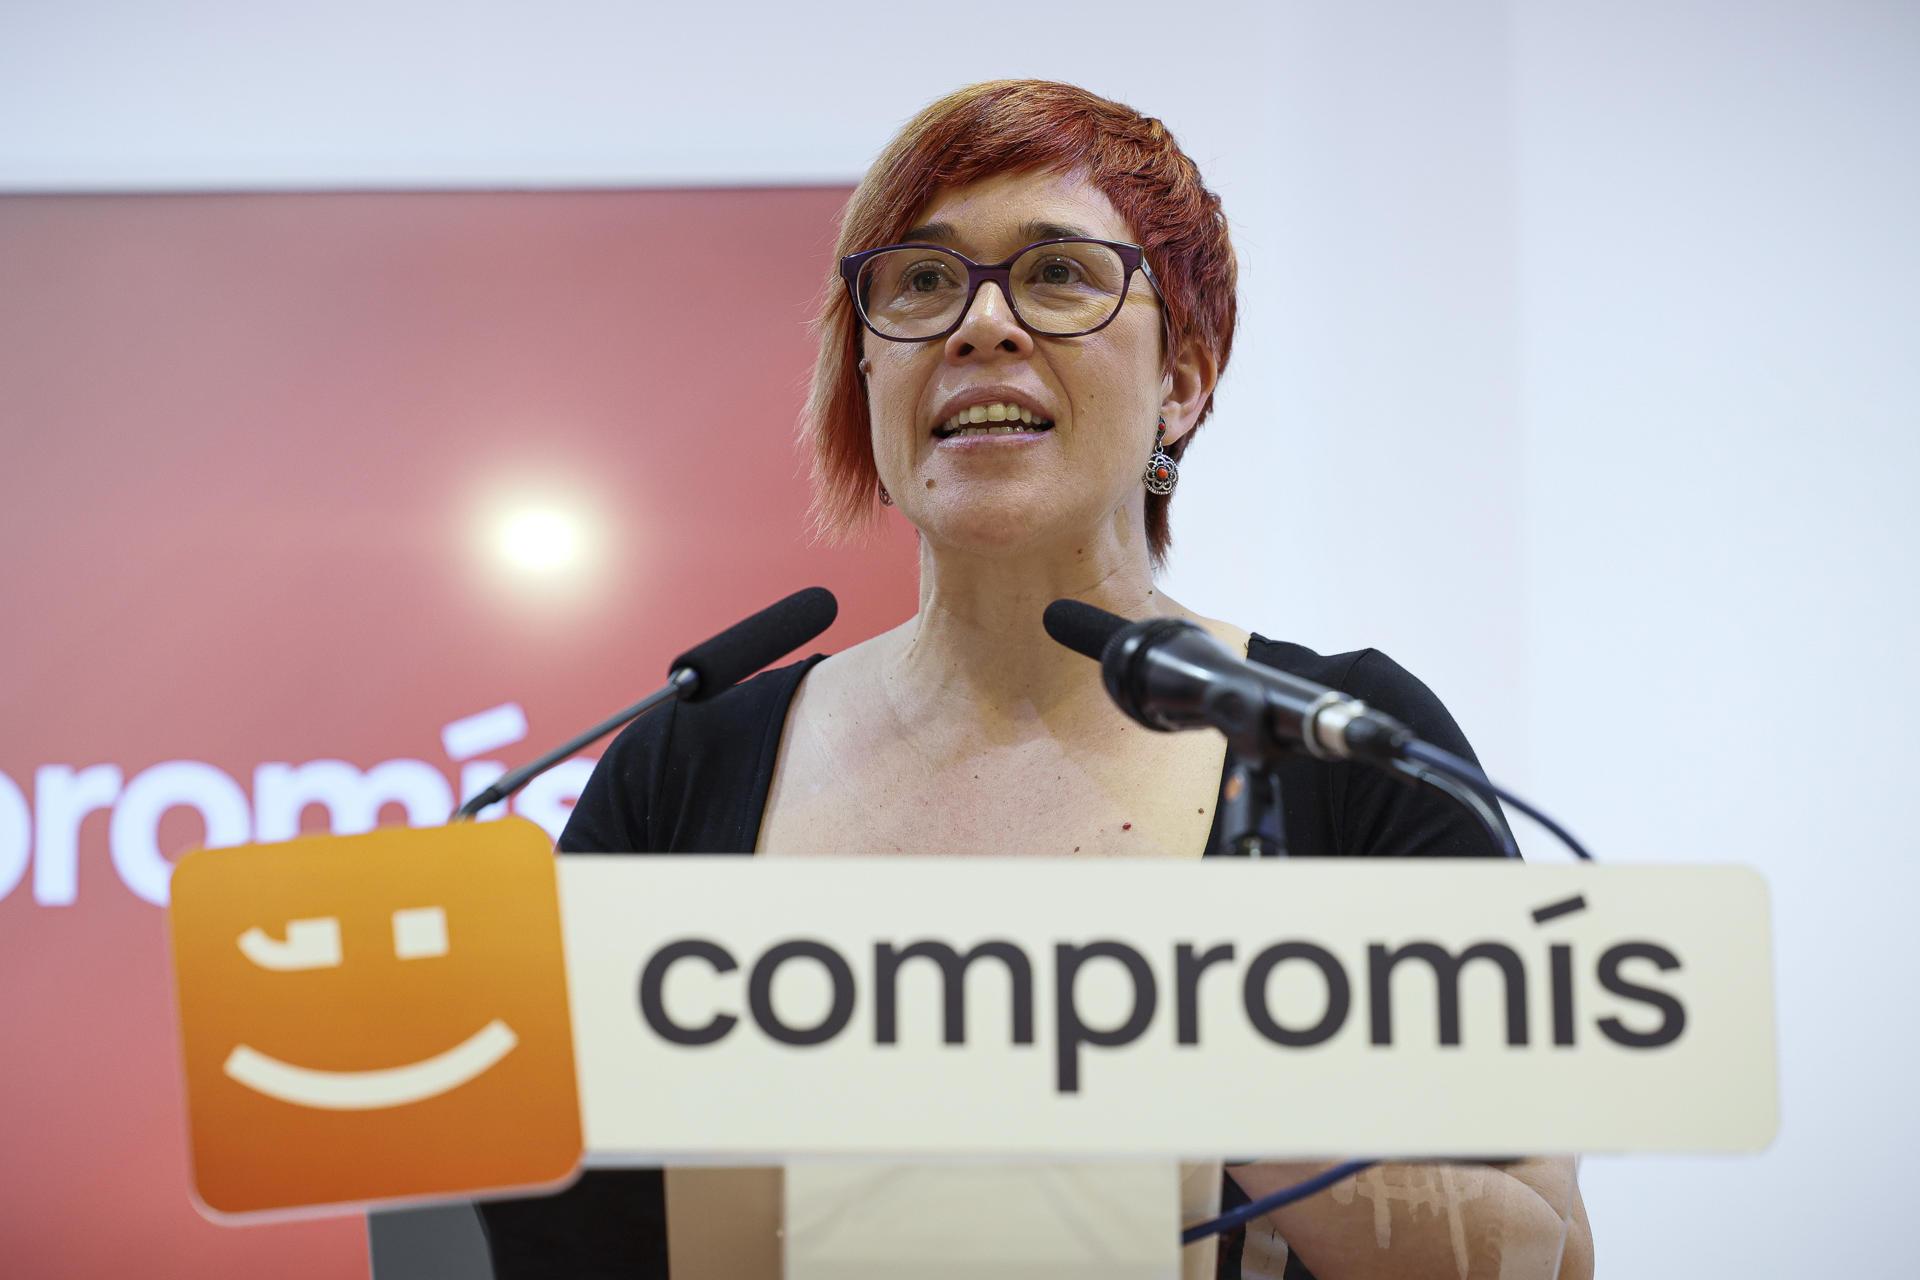 La portavoz de Compromís, Àgueda Micó. EFE/Biel Aliño/Archivo